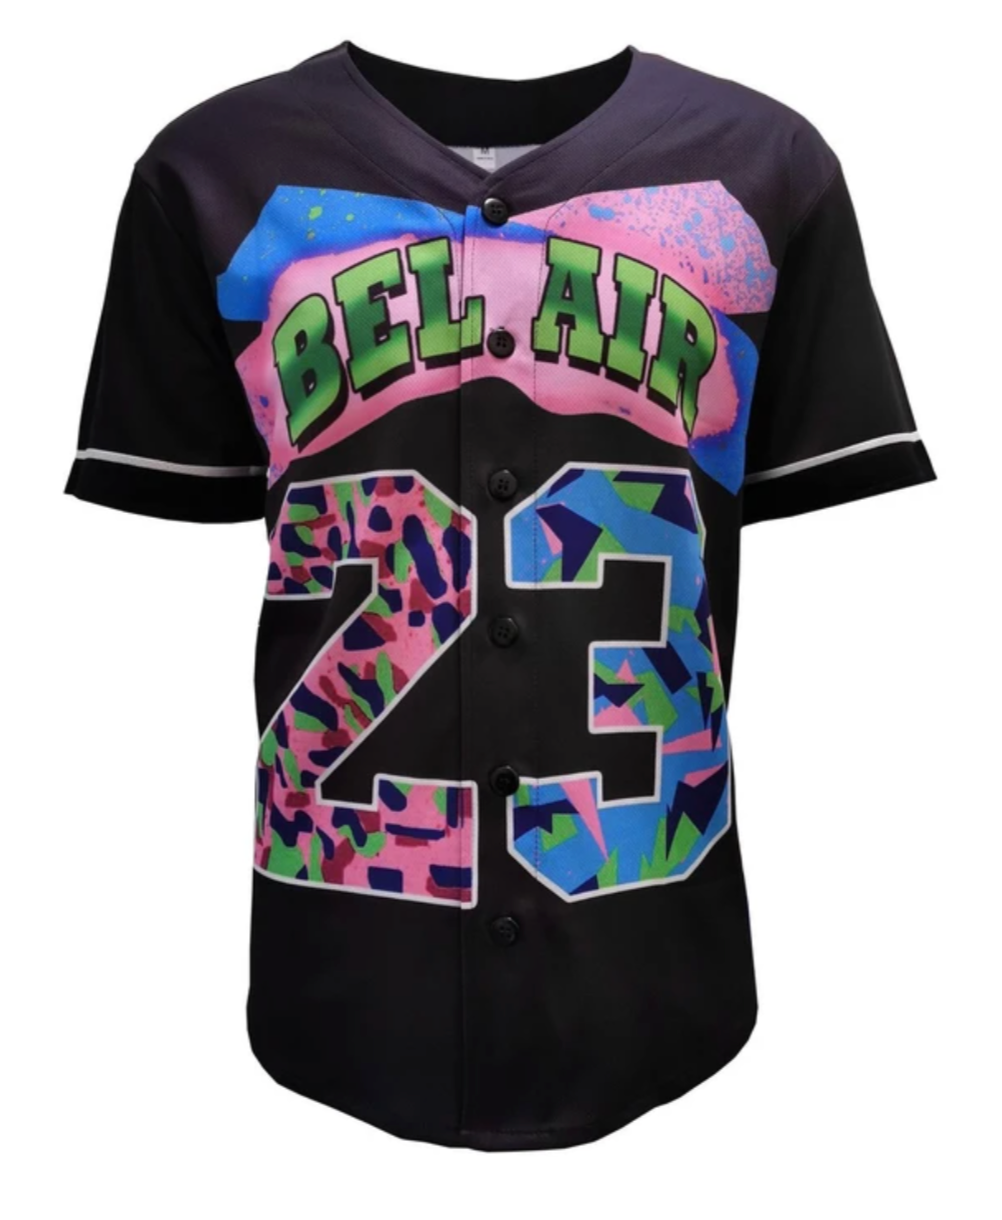 Bel Air X Baseball Jersey